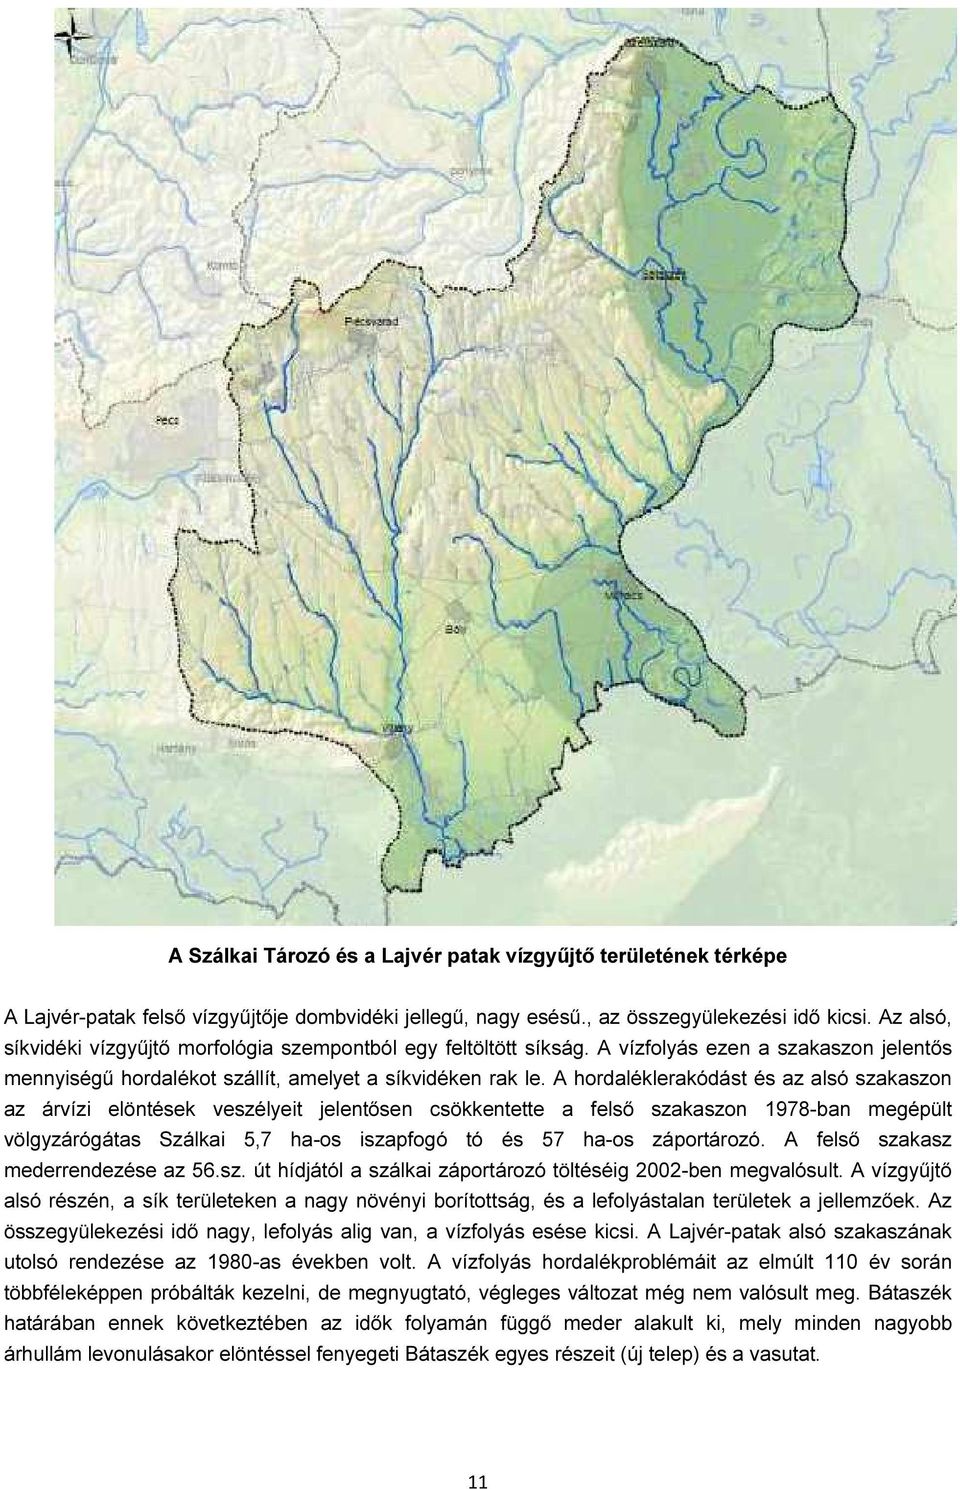 A hordaléklerakódást és az alsó szakaszon az árvízi elöntések veszélyeit jelentősen csökkentette a felső szakaszon 1978-ban megépült völgyzárógátas Szálkai 5,7 ha-os iszapfogó tó és 57 ha-os